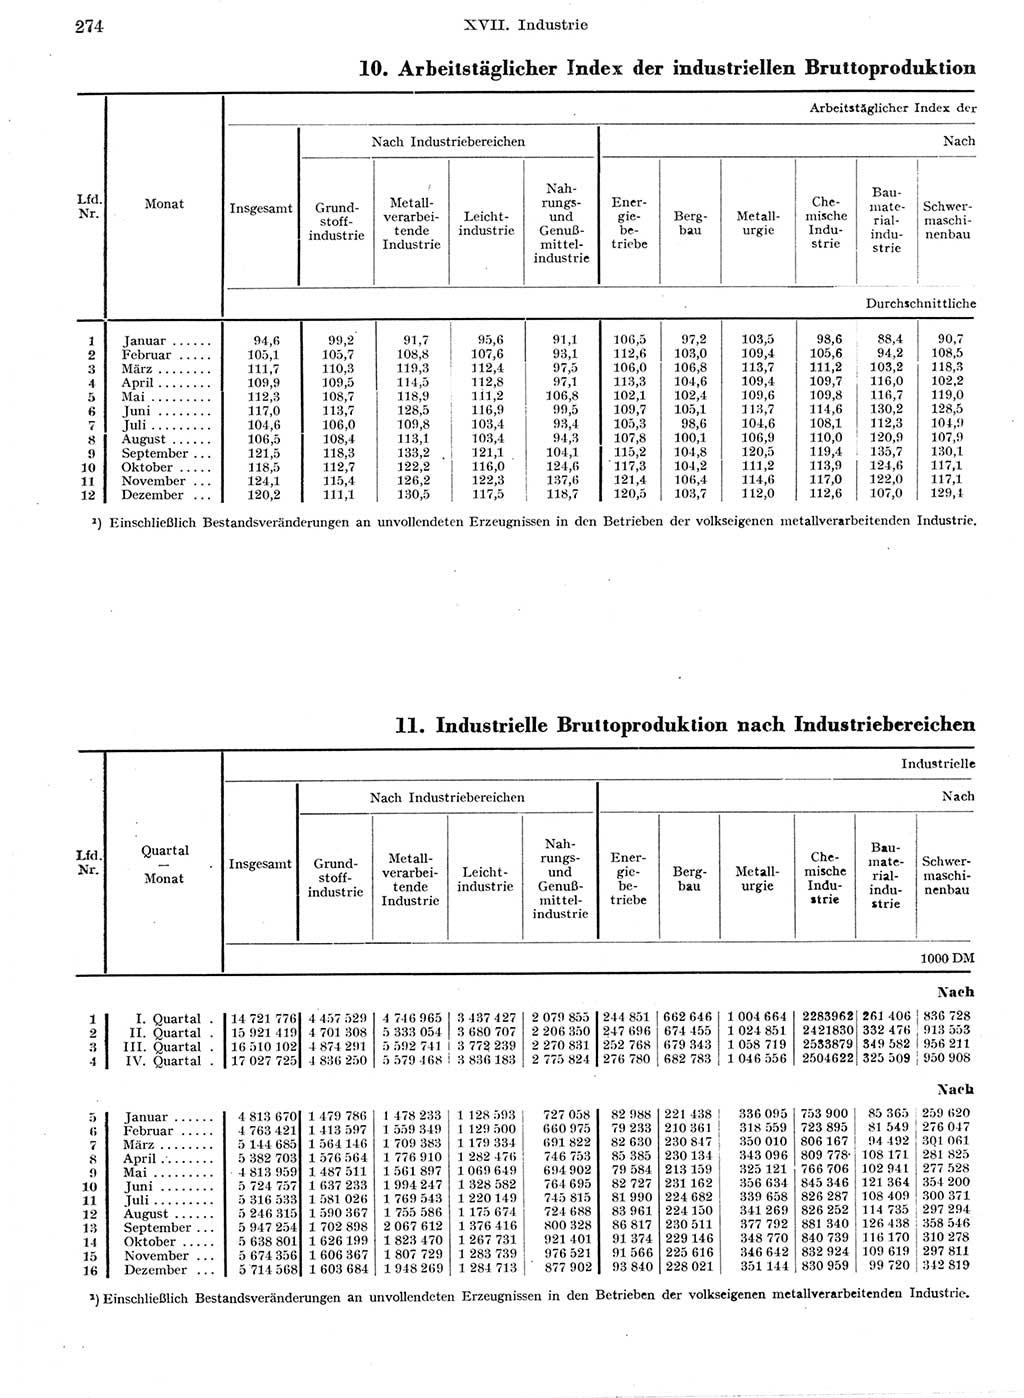 Statistisches Jahrbuch der Deutschen Demokratischen Republik (DDR) 1959, Seite 274 (Stat. Jb. DDR 1959, S. 274)